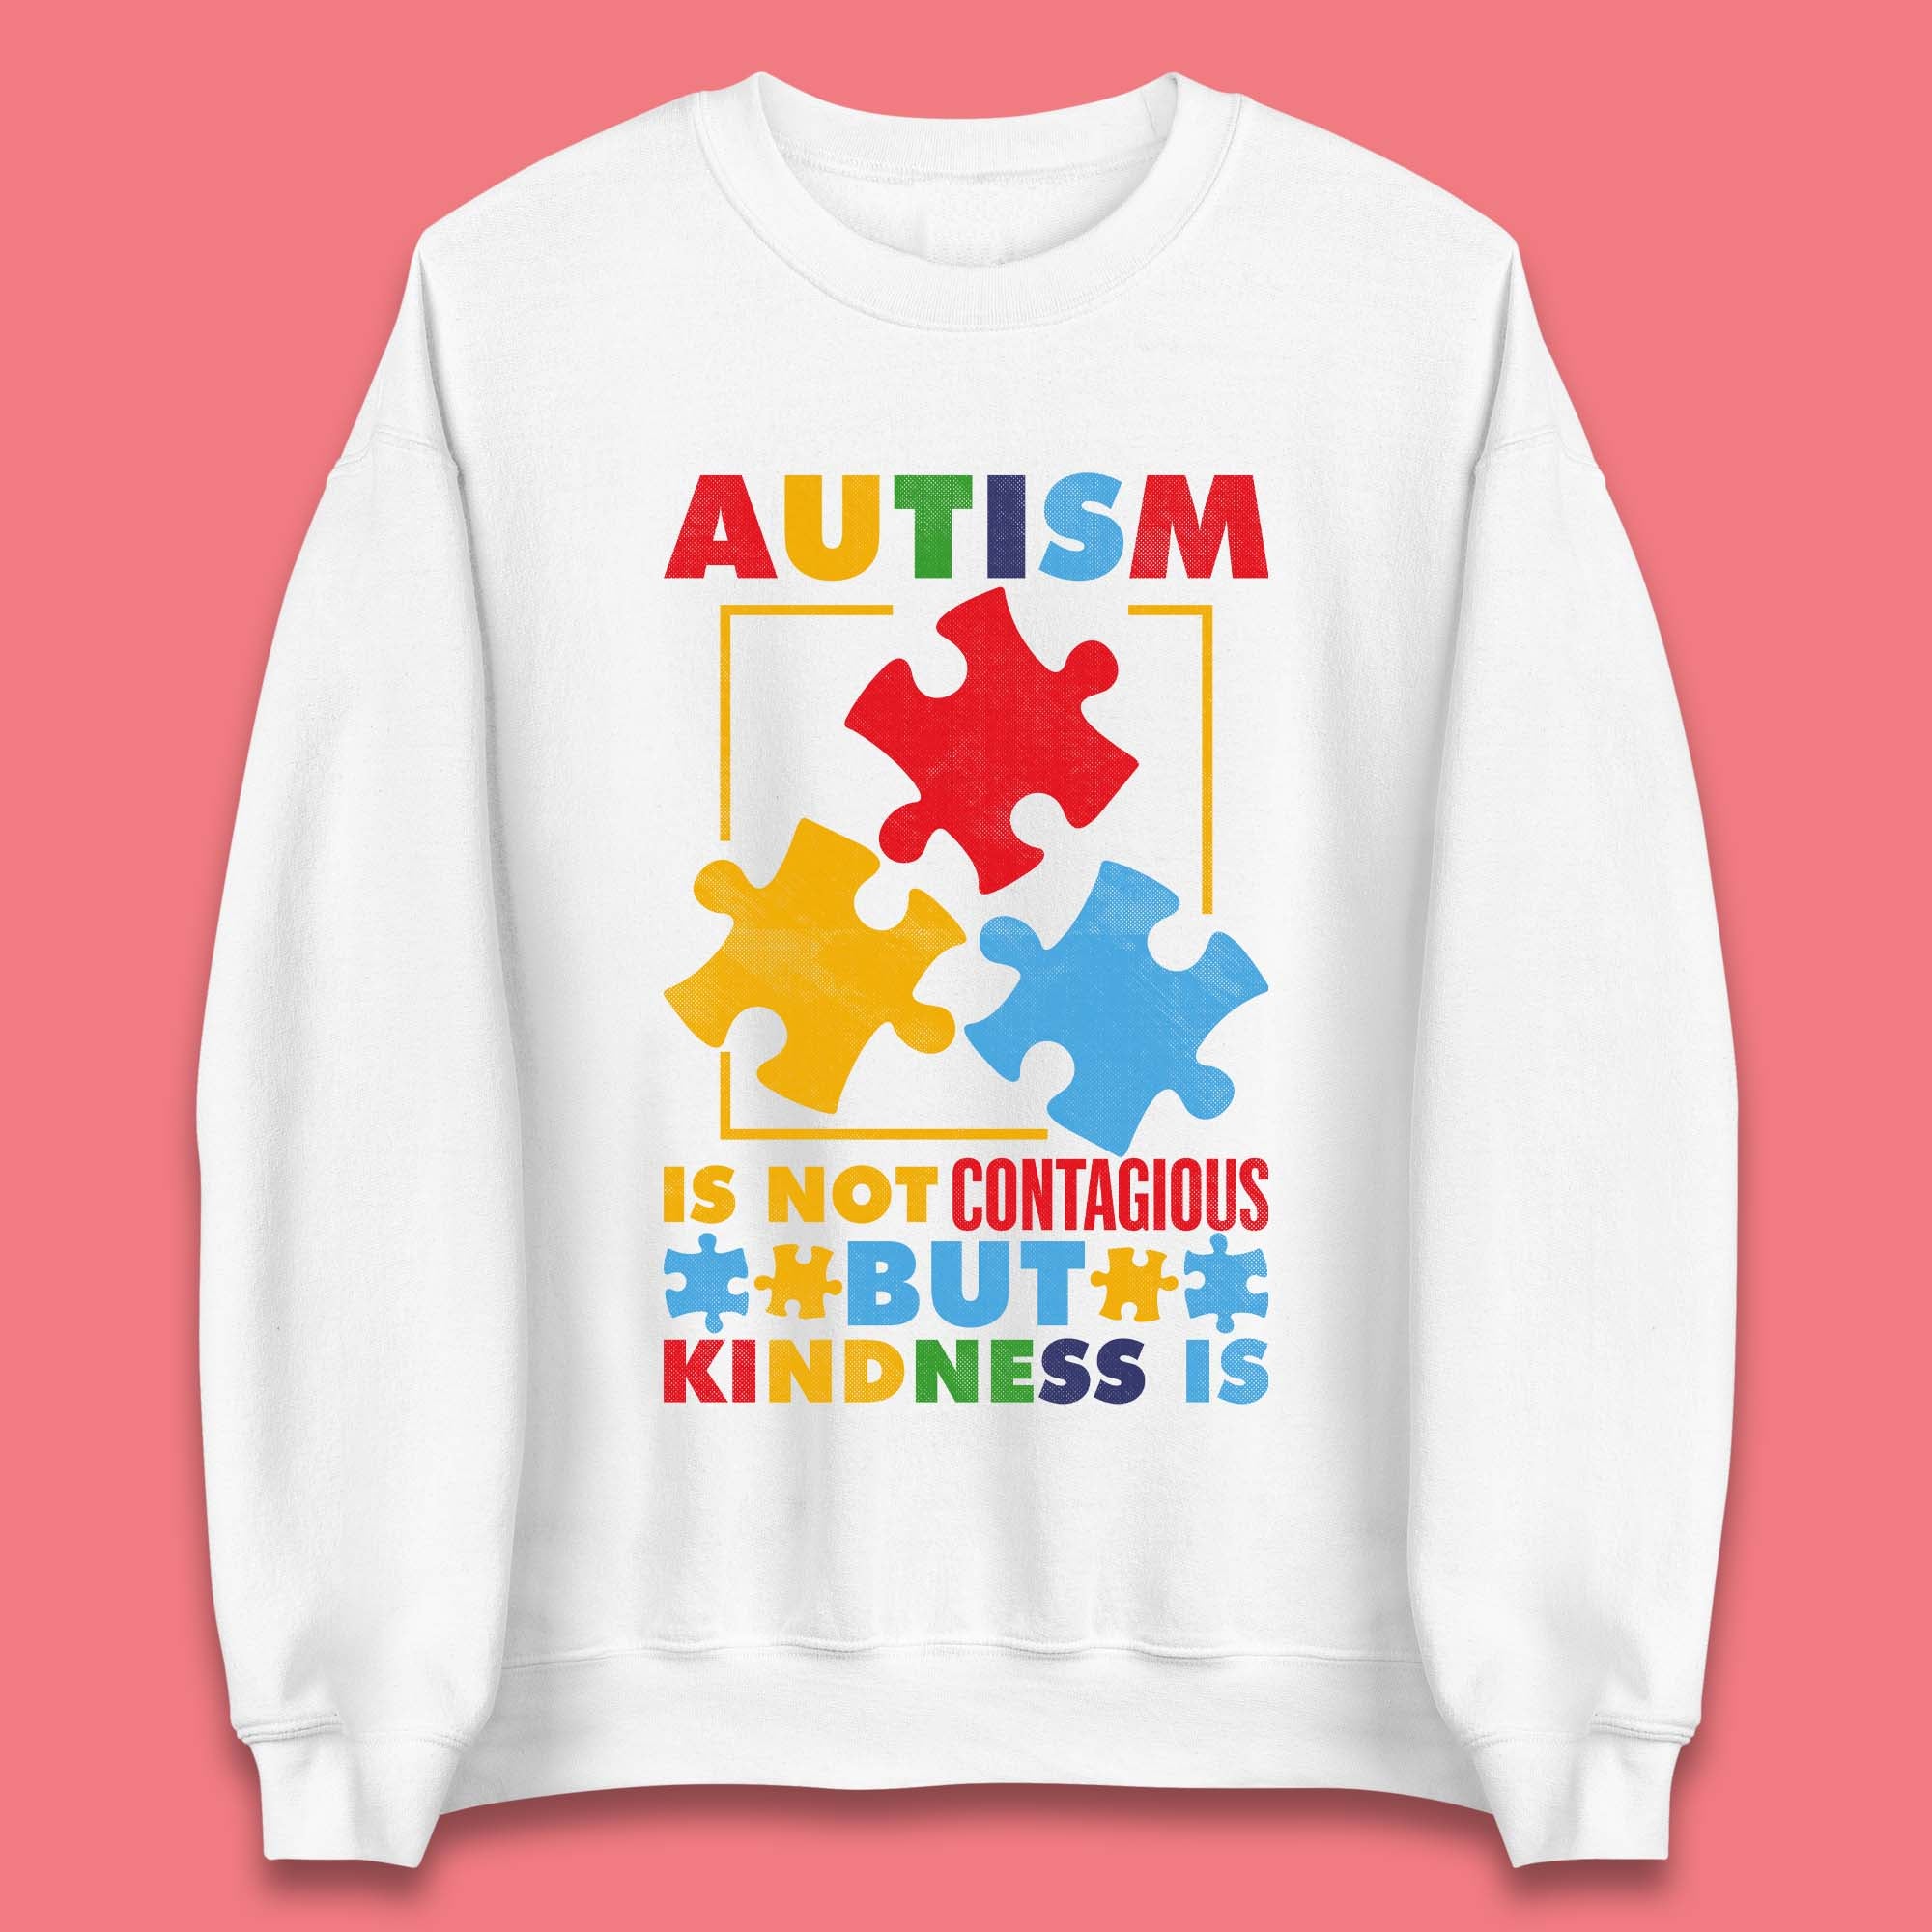 Autism Kindness Unisex Sweatshirt